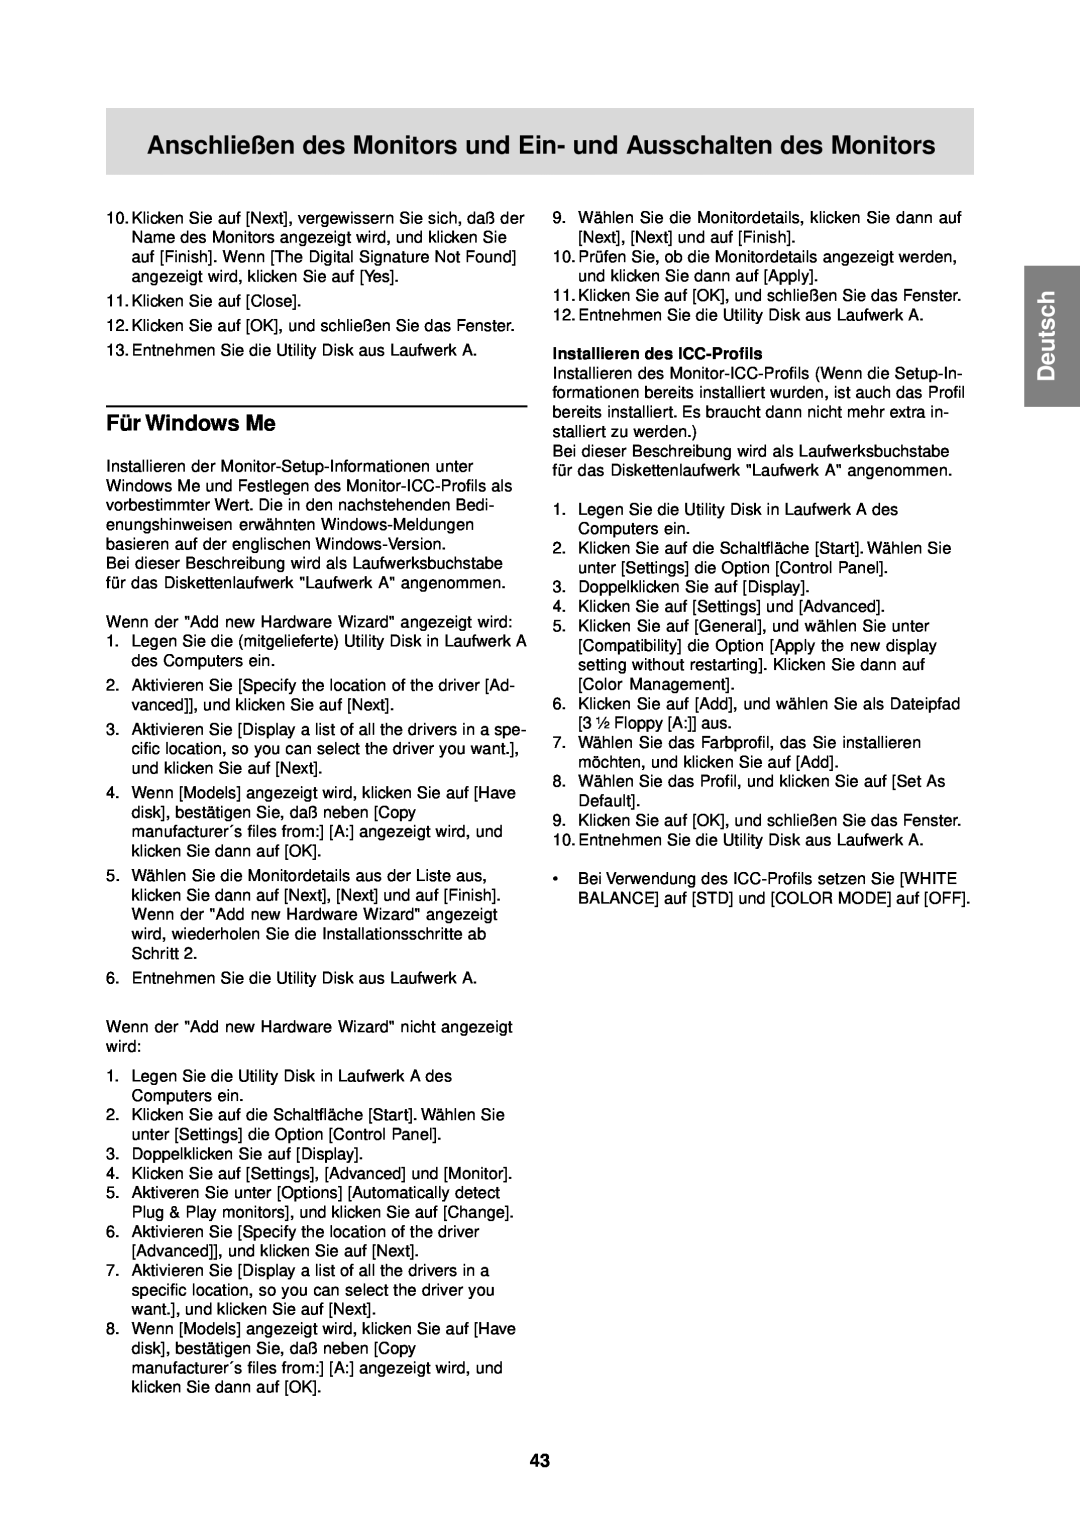 Sharp LL-T1610W operation manual Für Windows Me, Anschließen des Monitors und Ein- und Ausschalten des Monitors, Deutsch 